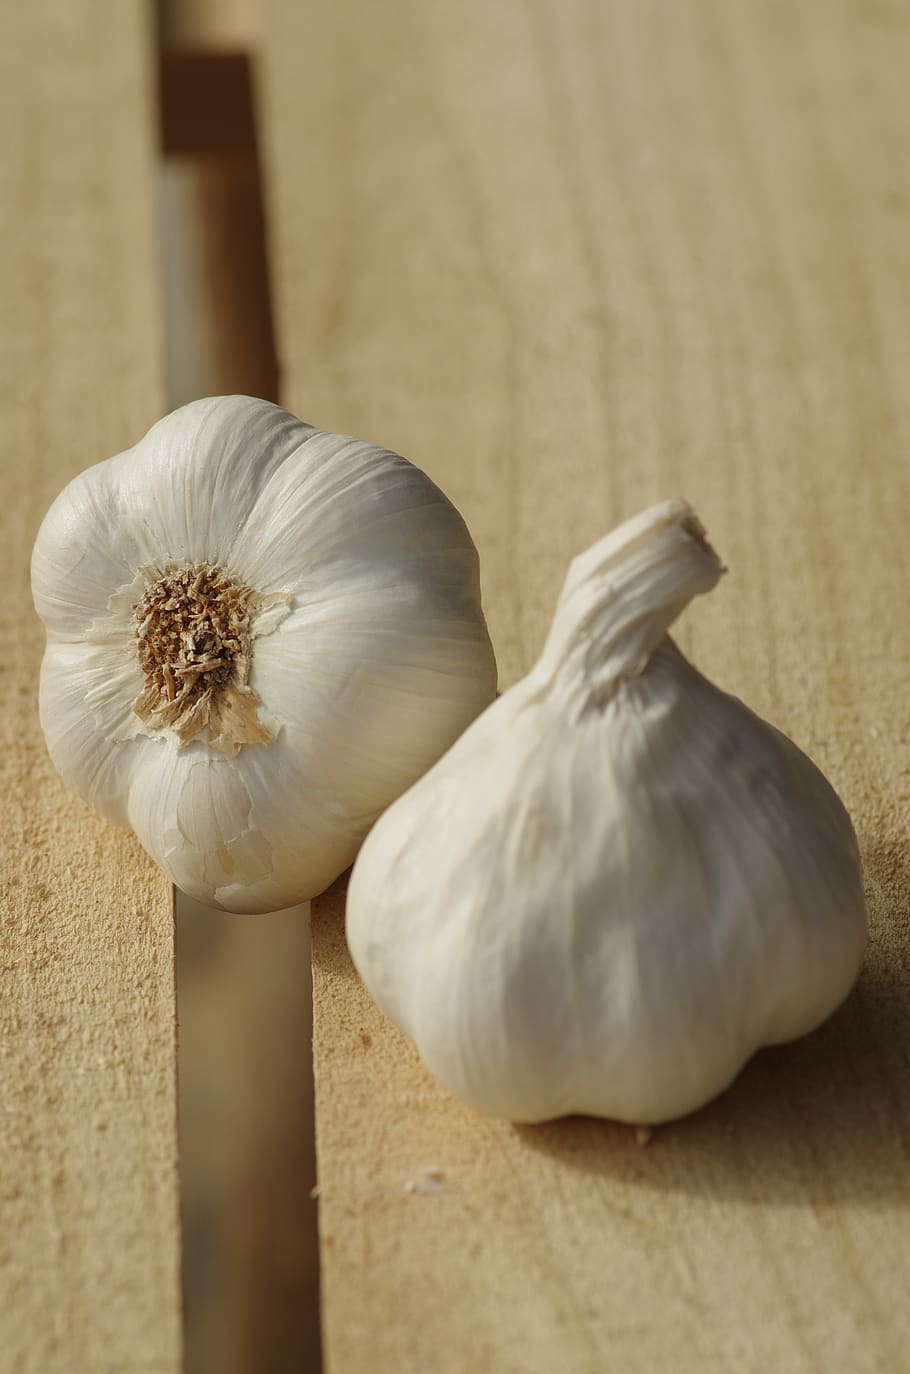 garlic, garlic white, garlic grown, food, harvest, vegetable, kitchen, flavor, culture, agriculture